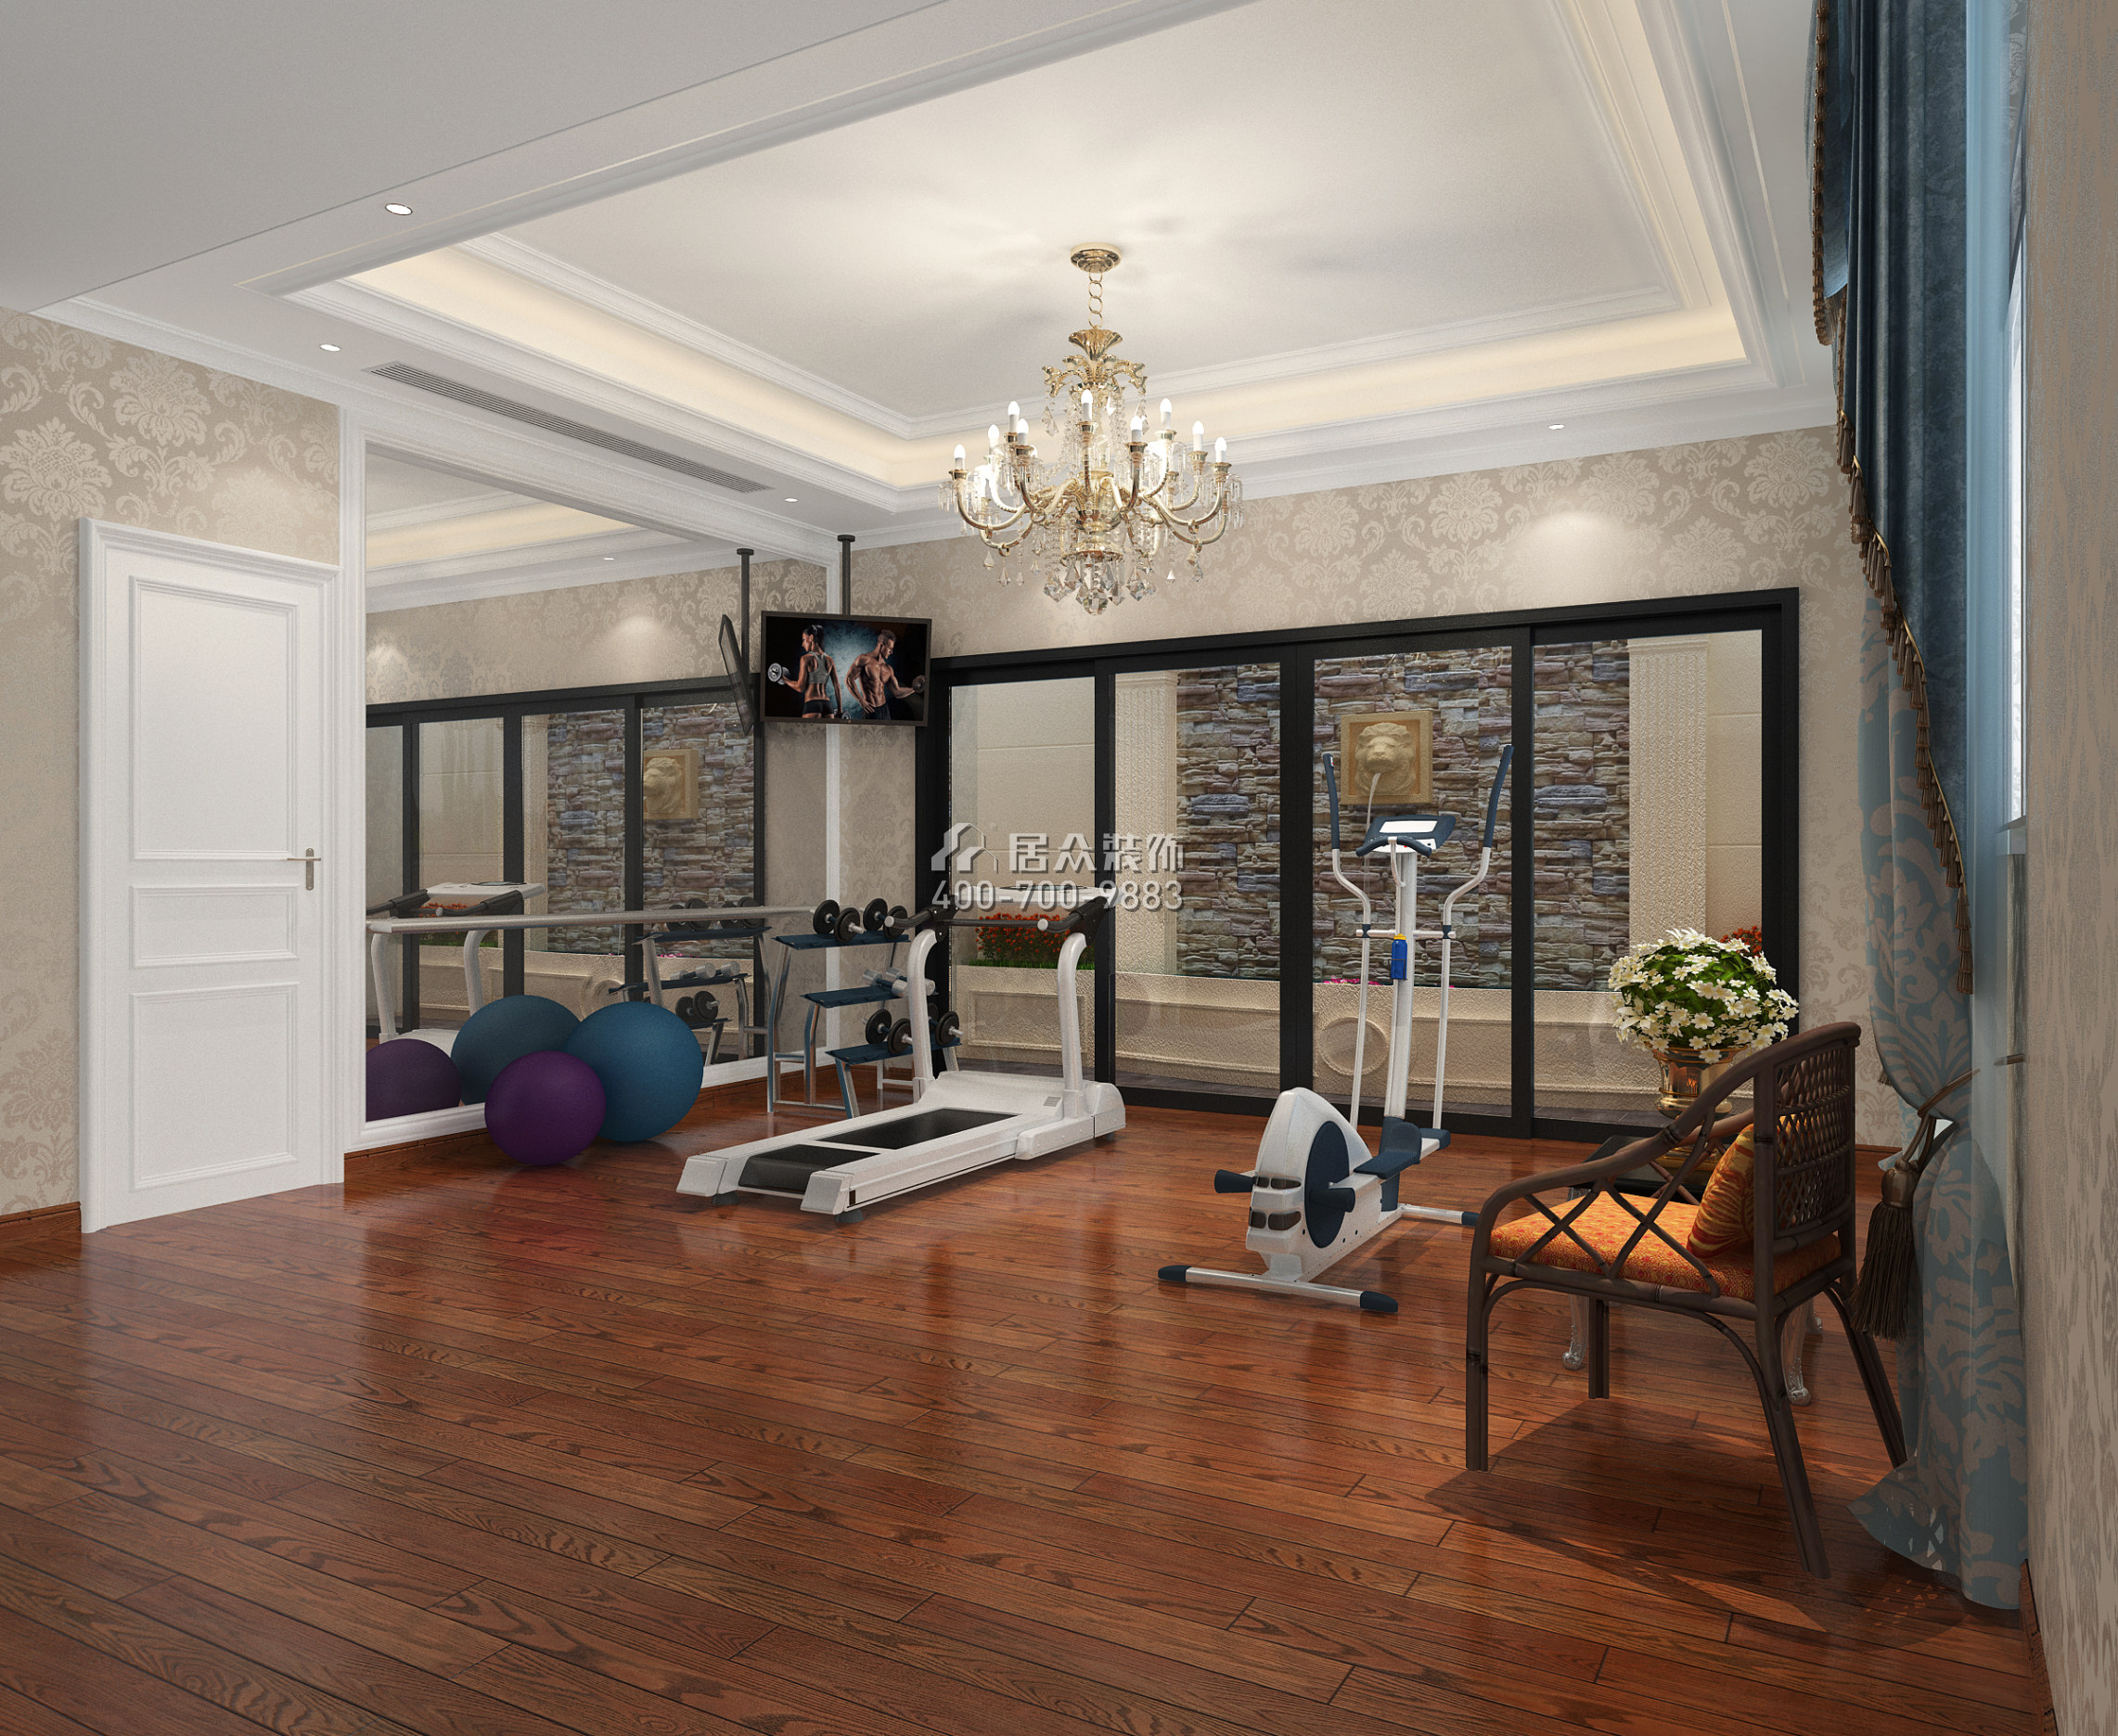 紫園600平方米歐式風格別墅戶型客廳裝修效果圖